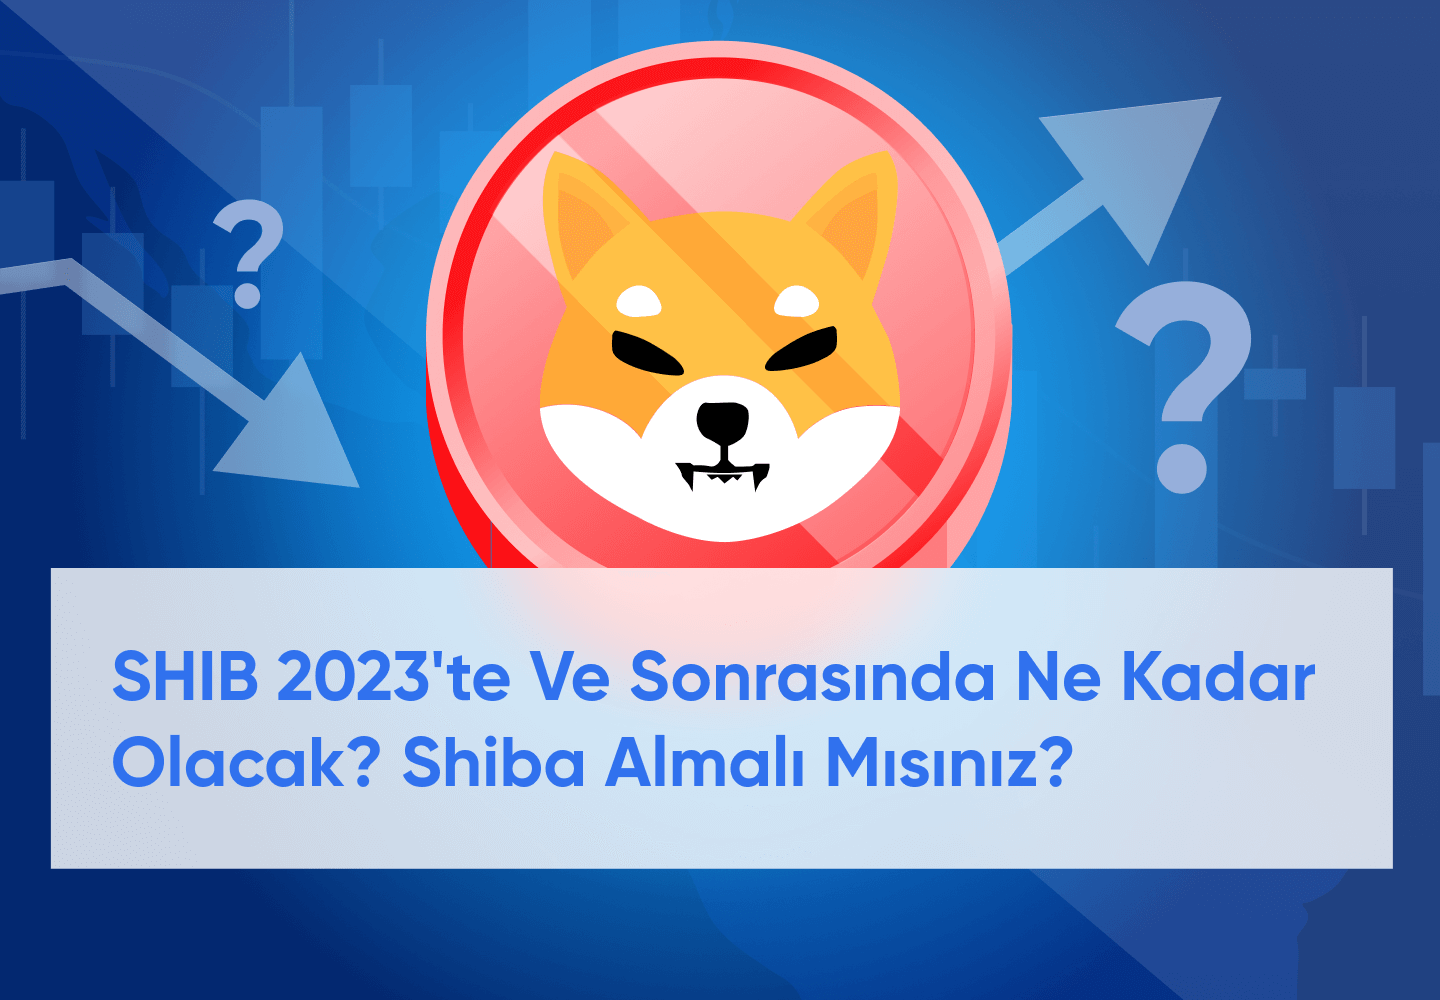 For 2023-2030 için Shiba Coin